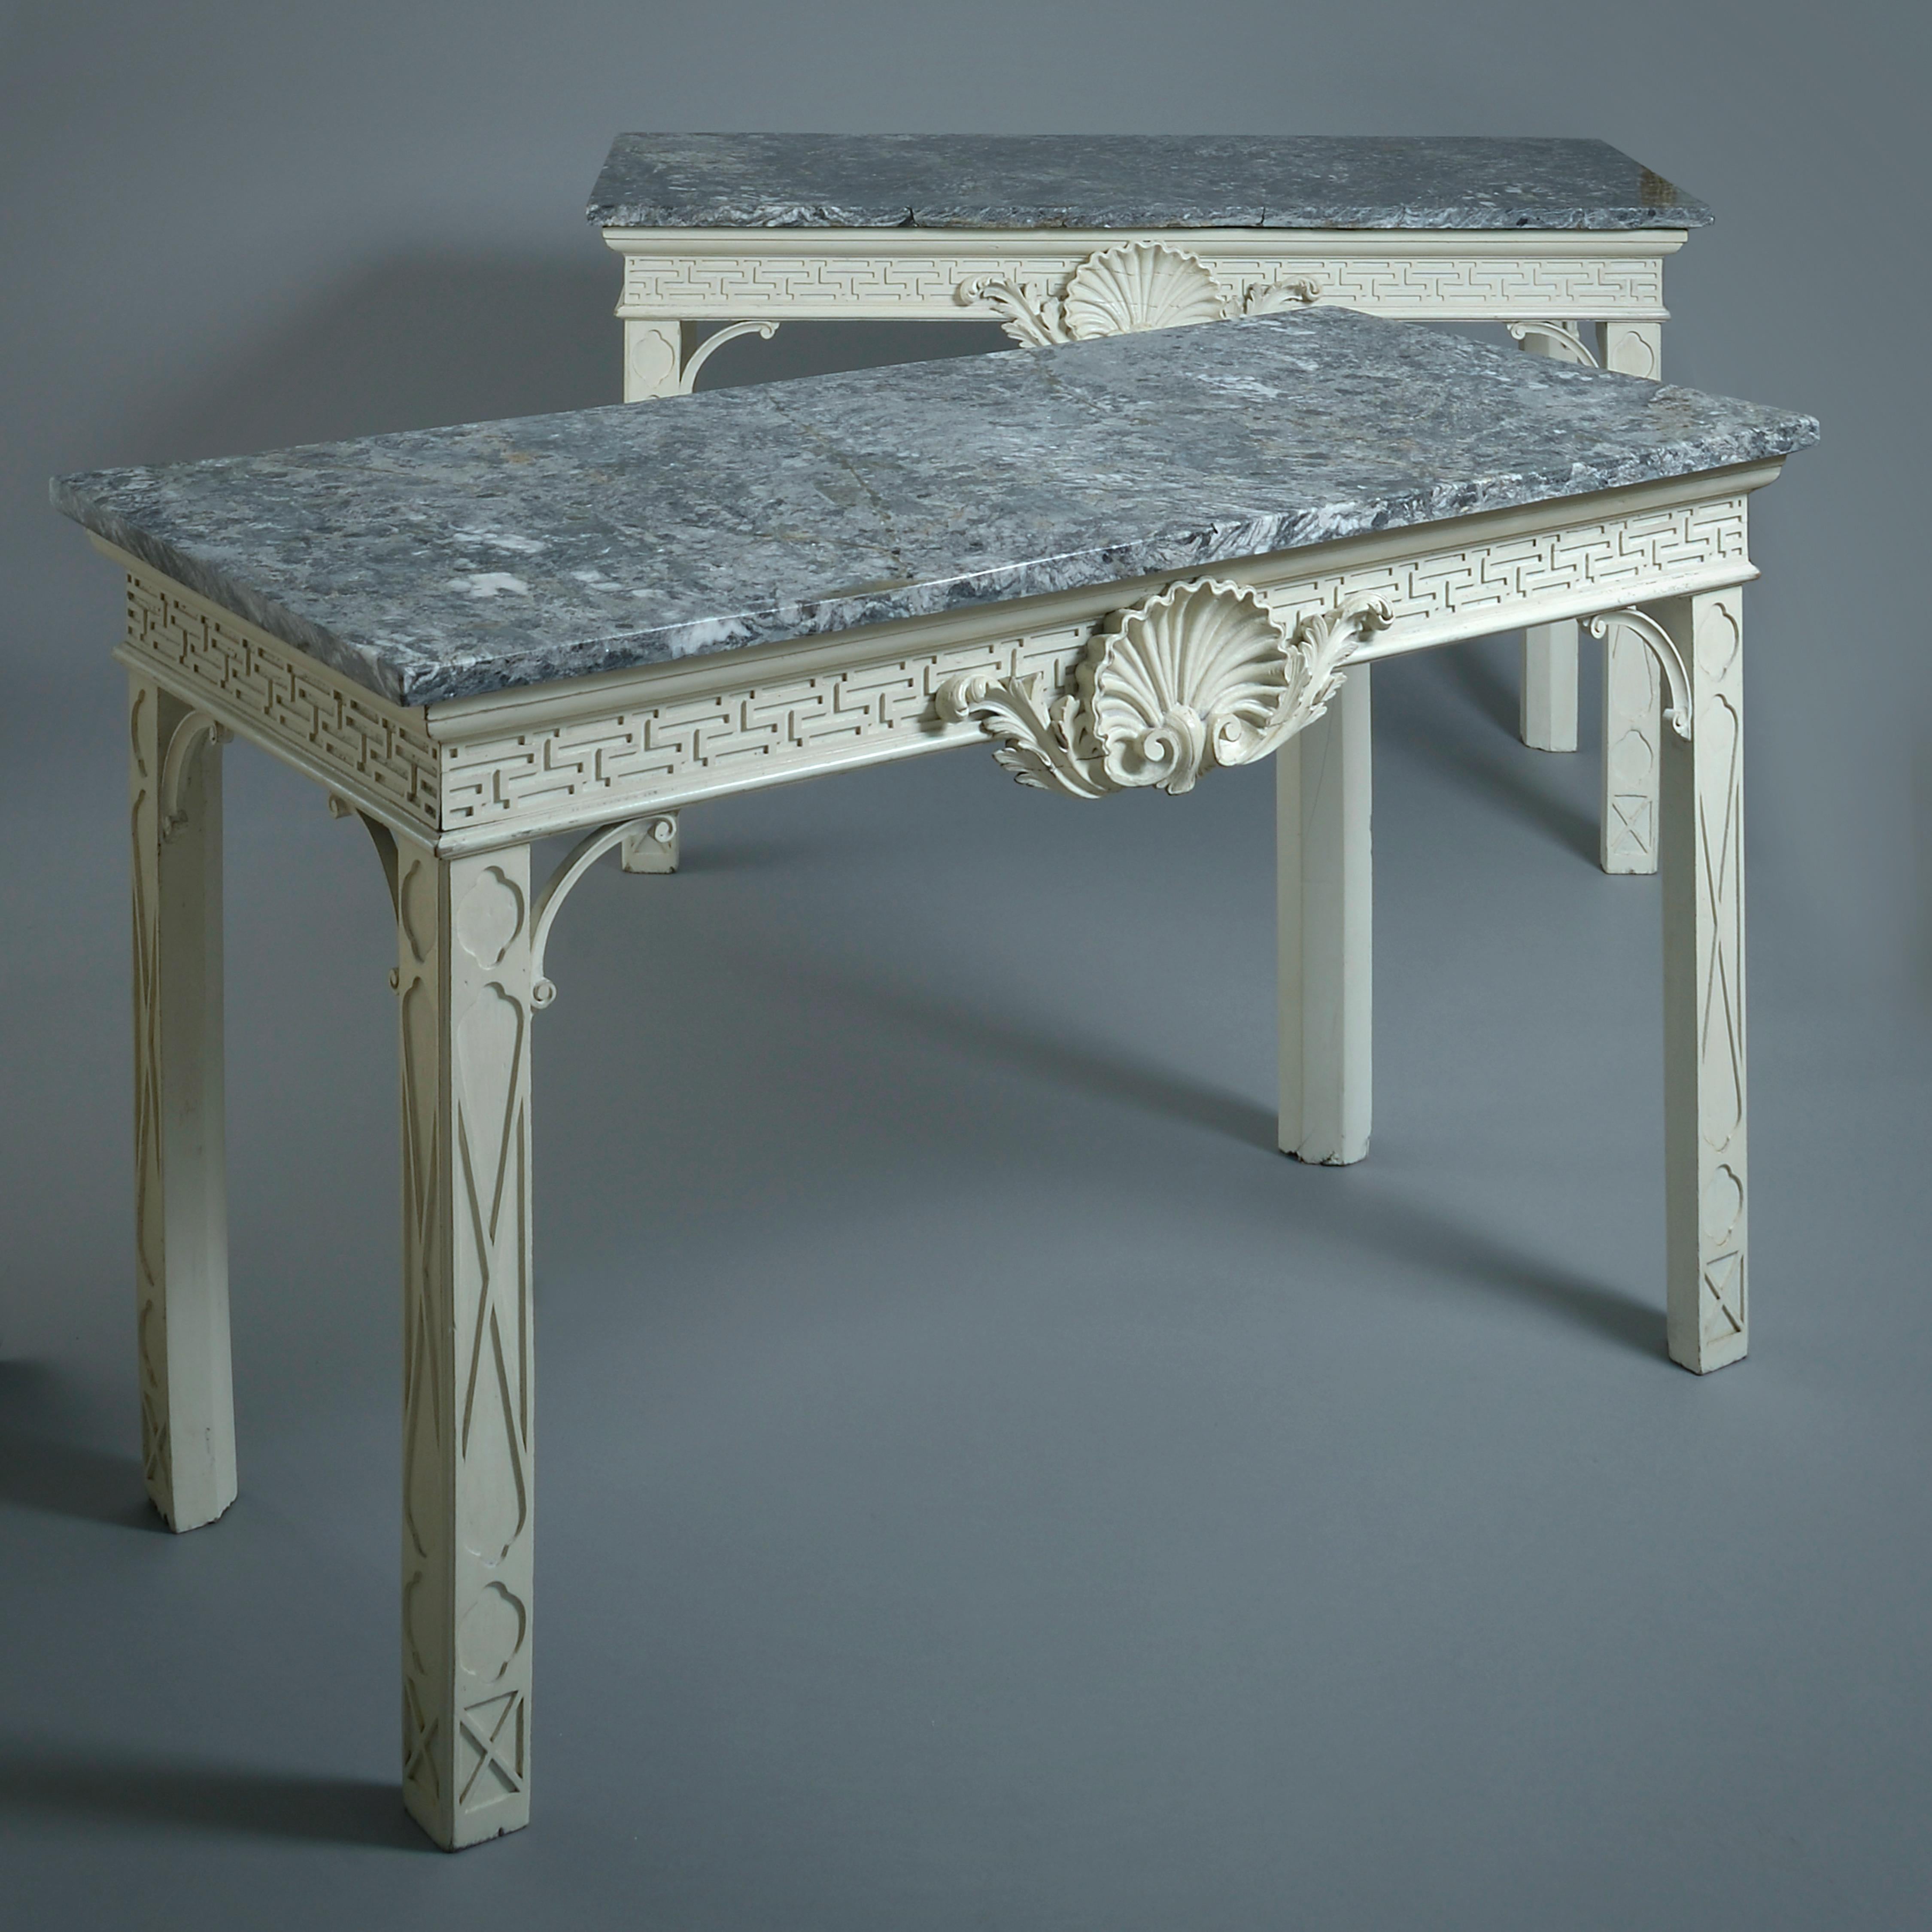 UNE BELLE PAIRE DE TABLES D'APPOINT PEINTES EN BLANC DE GEORGE II, VERS 1750.

Chacune d'entre elles est dotée d'un plateau en marbre gris d'origine. Redécoré en suivant les traces de la peinture blanche d'origine à base de pierre.